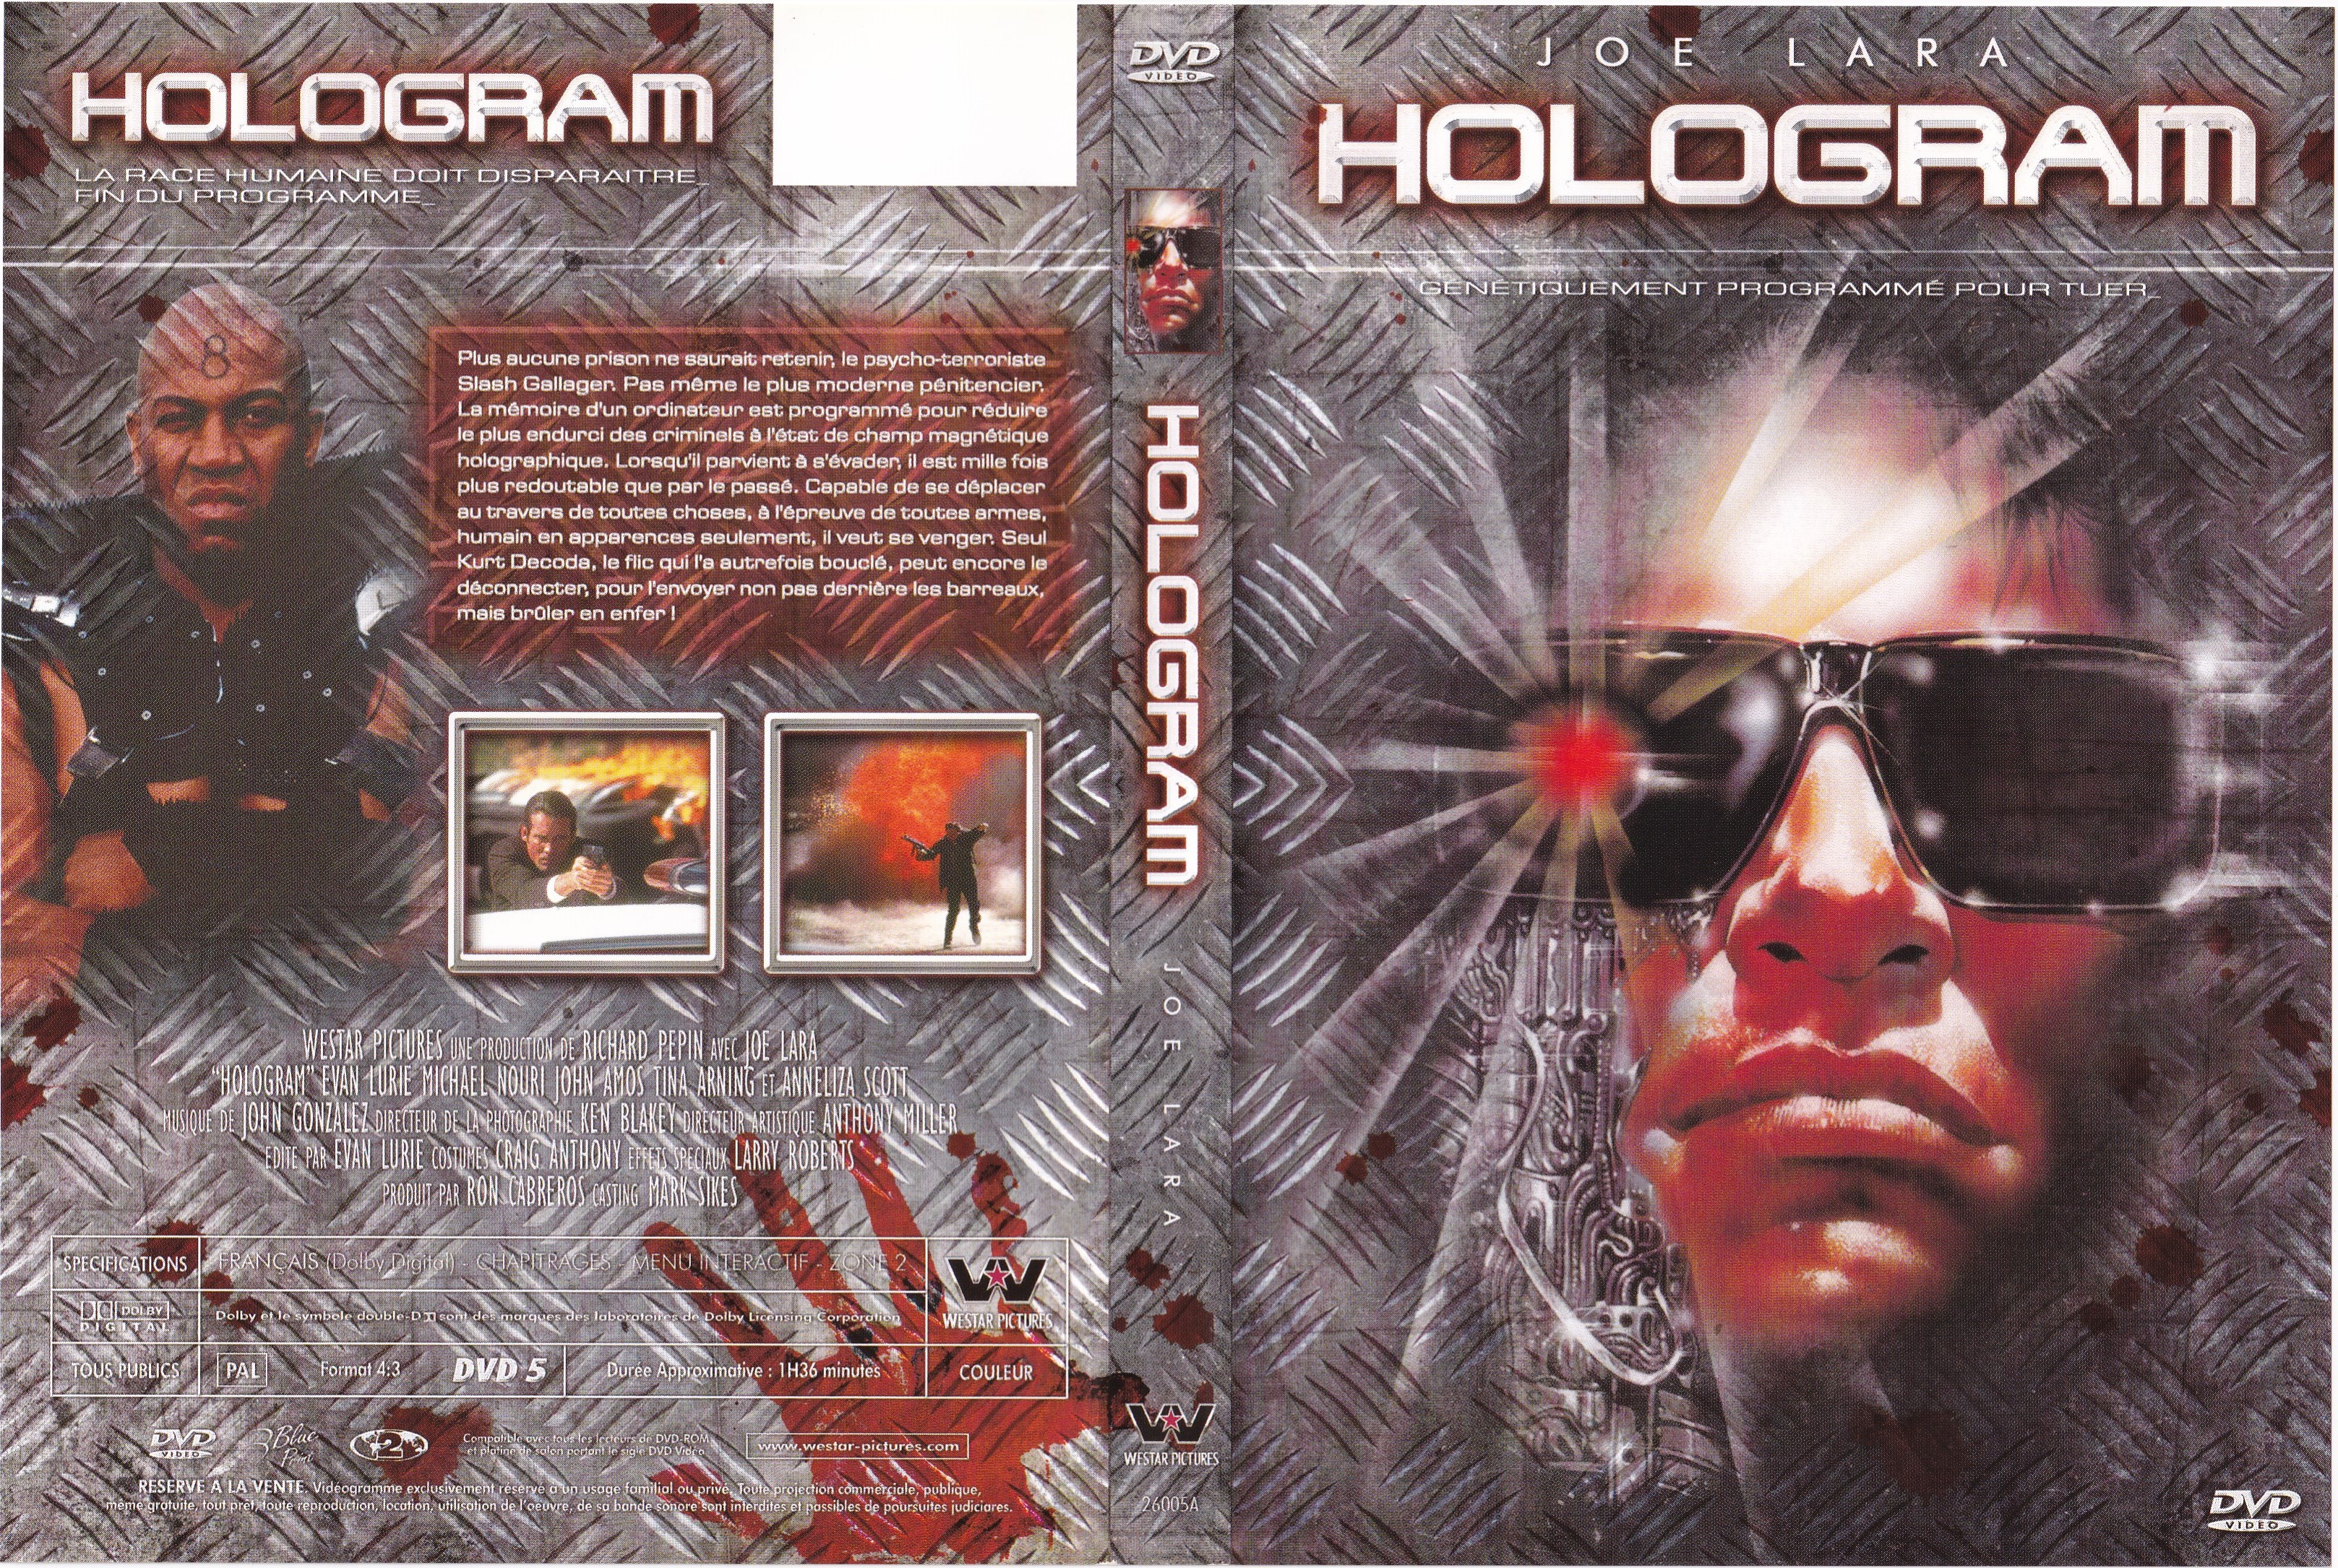 Jaquette DVD Hologram